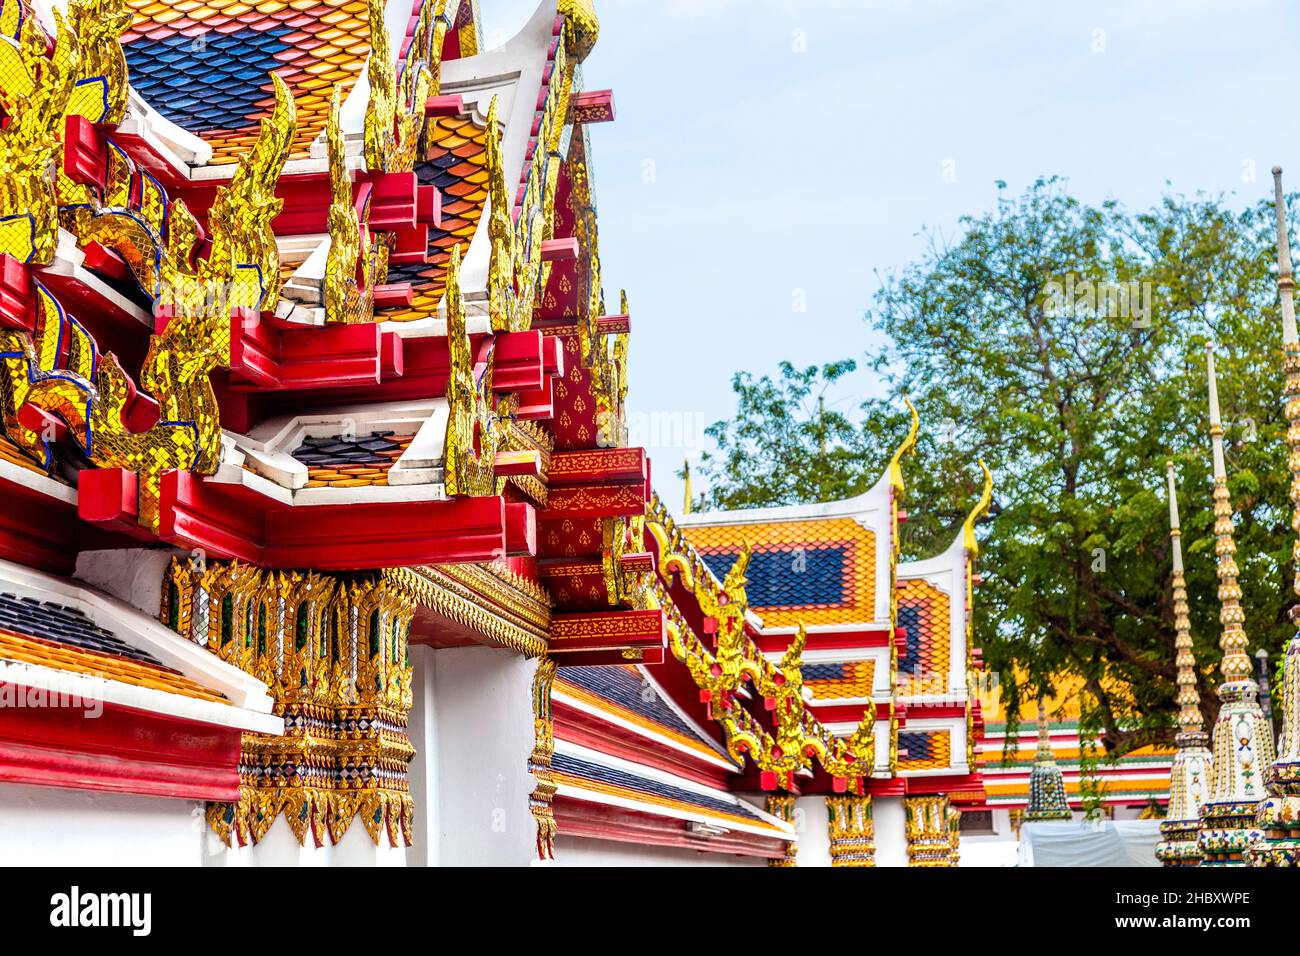 Détail de haut en couleur, toit doré au temple Wat Pho (Temple du Bouddha couché), Bangkok, Thaïlande Banque D'Images